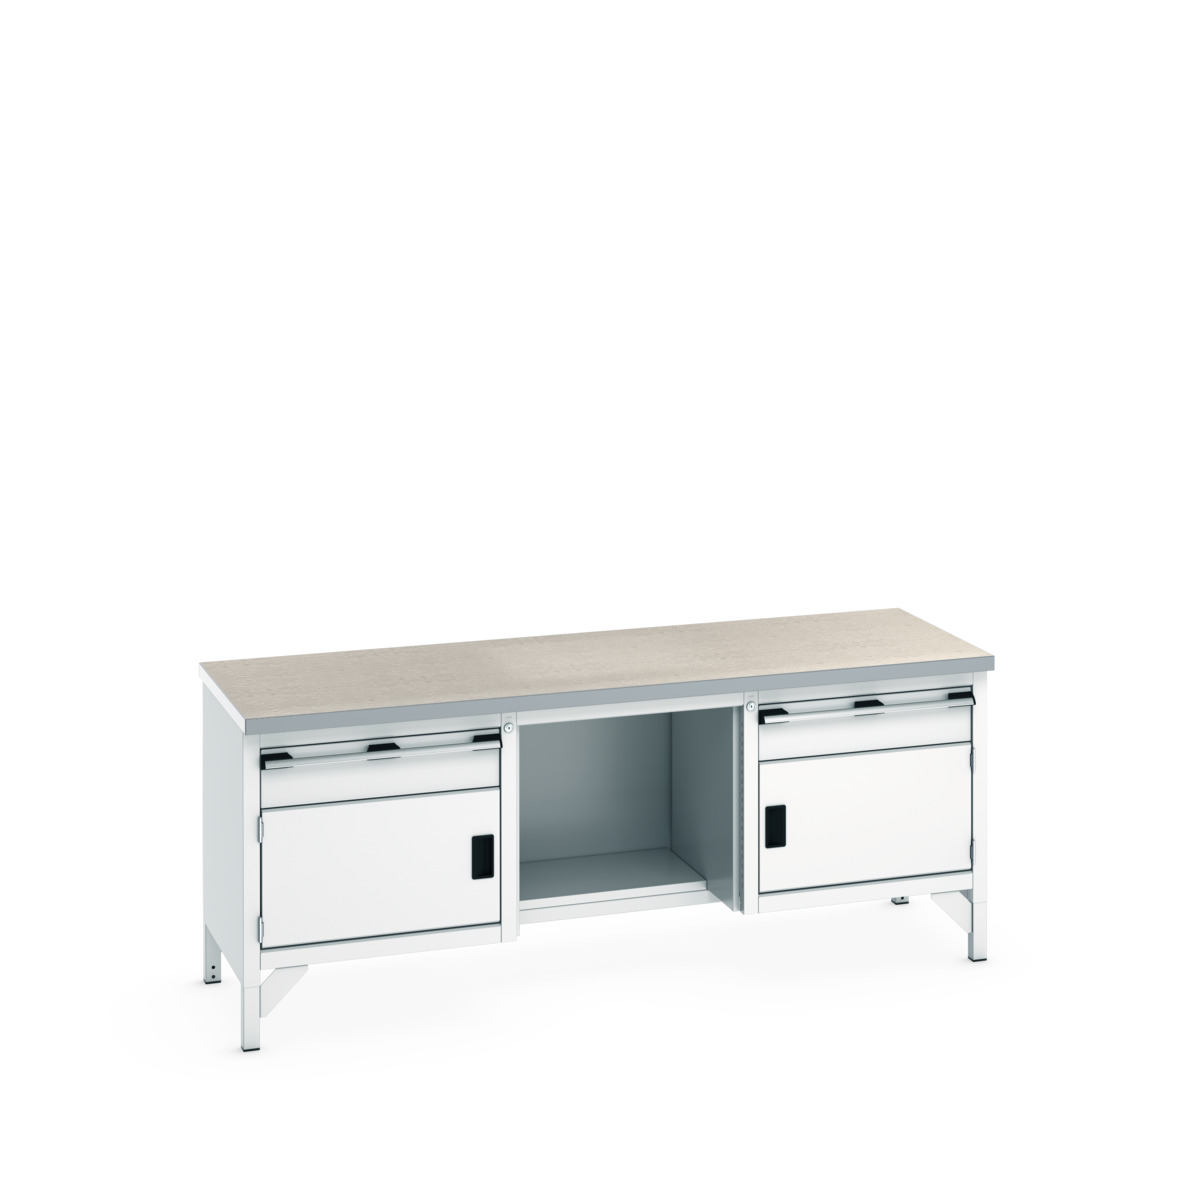 41002069.16V - cubio storage bench (lino)